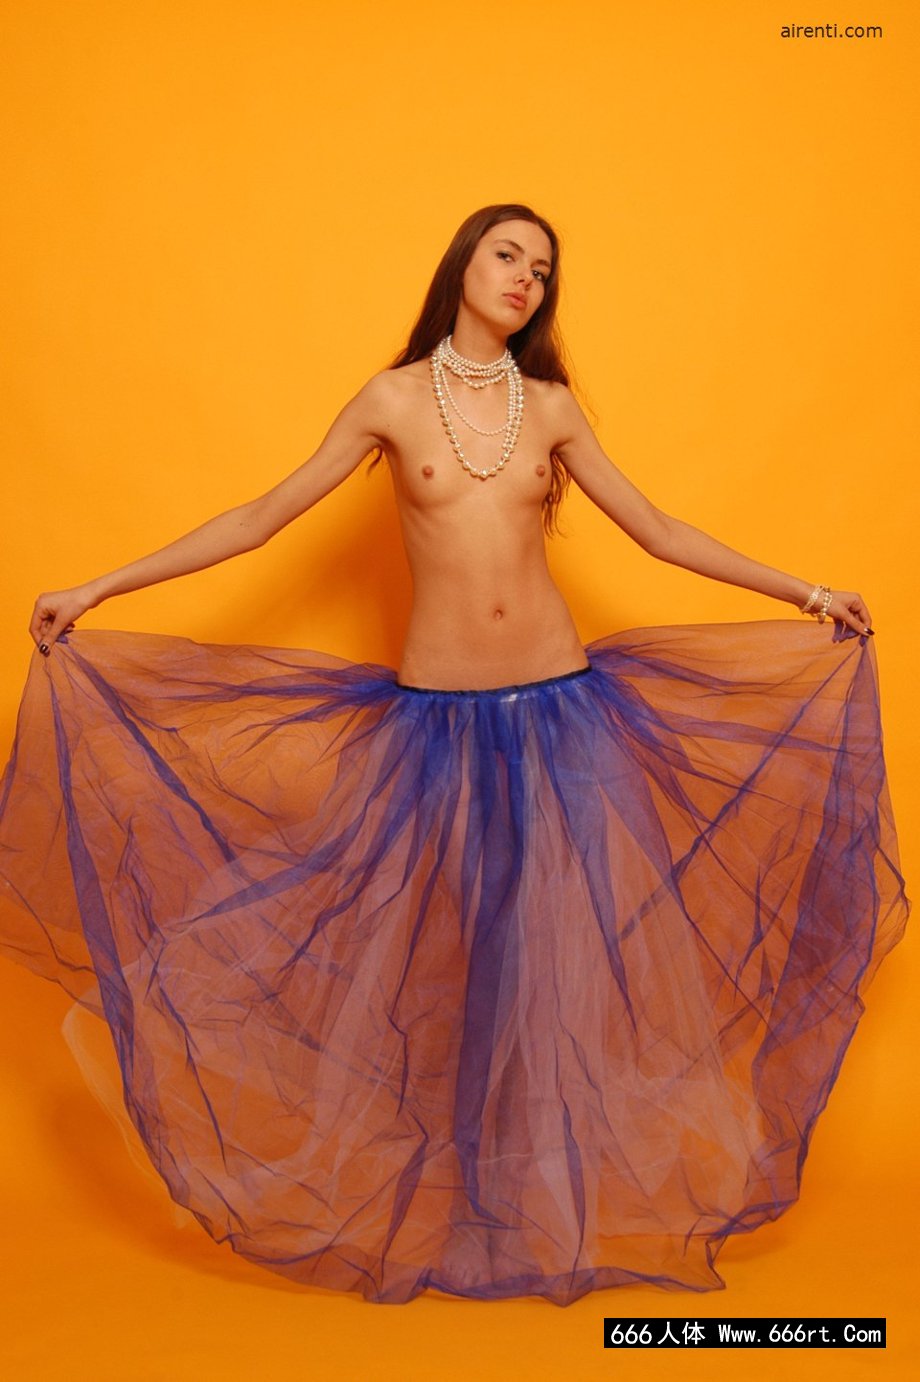 舞蹈嫩模Alaina橙色背景室拍人体,姐妹人体艺术照片图片搜索